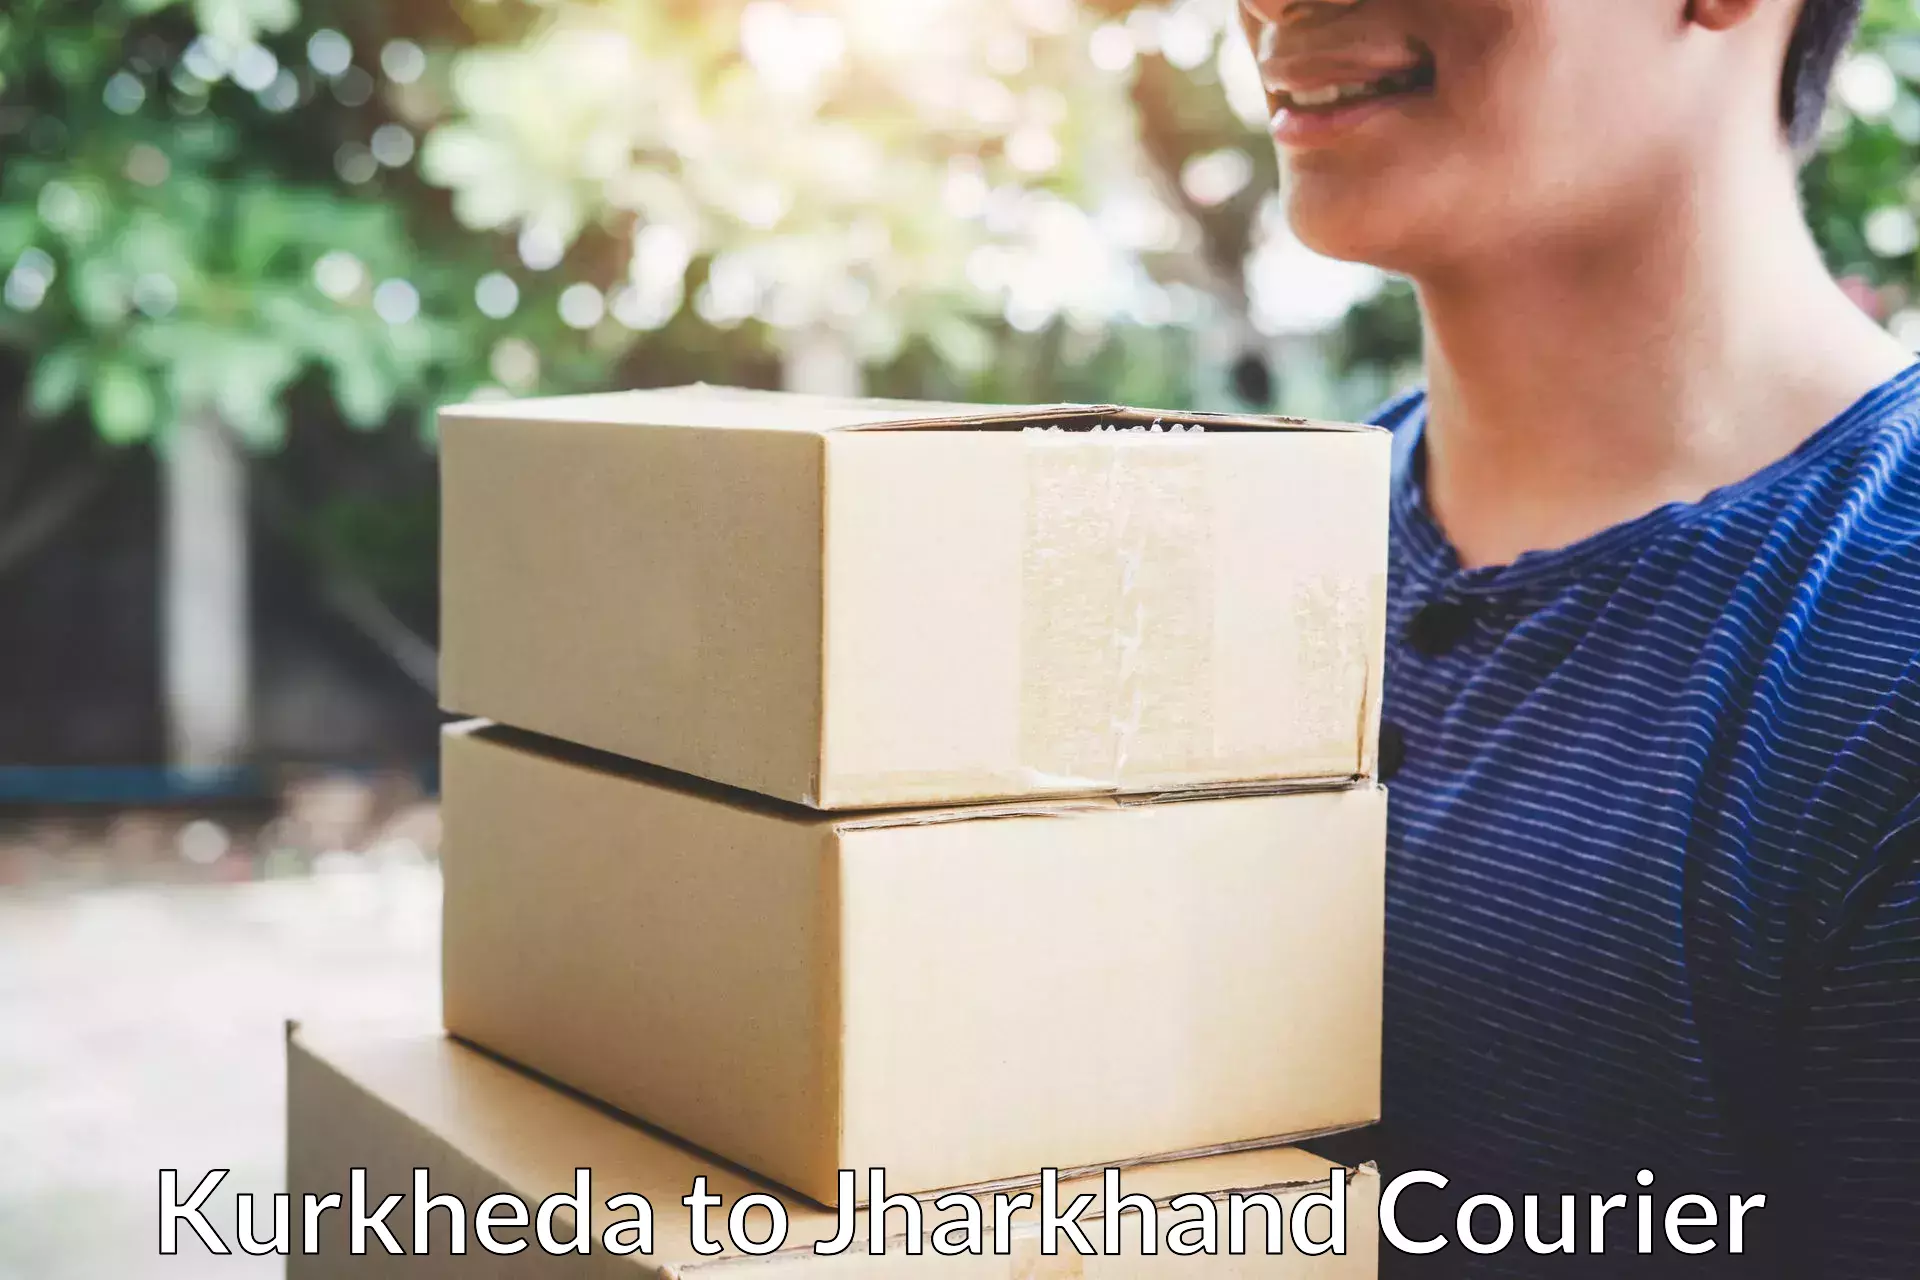 Professional moving company Kurkheda to Govindpur